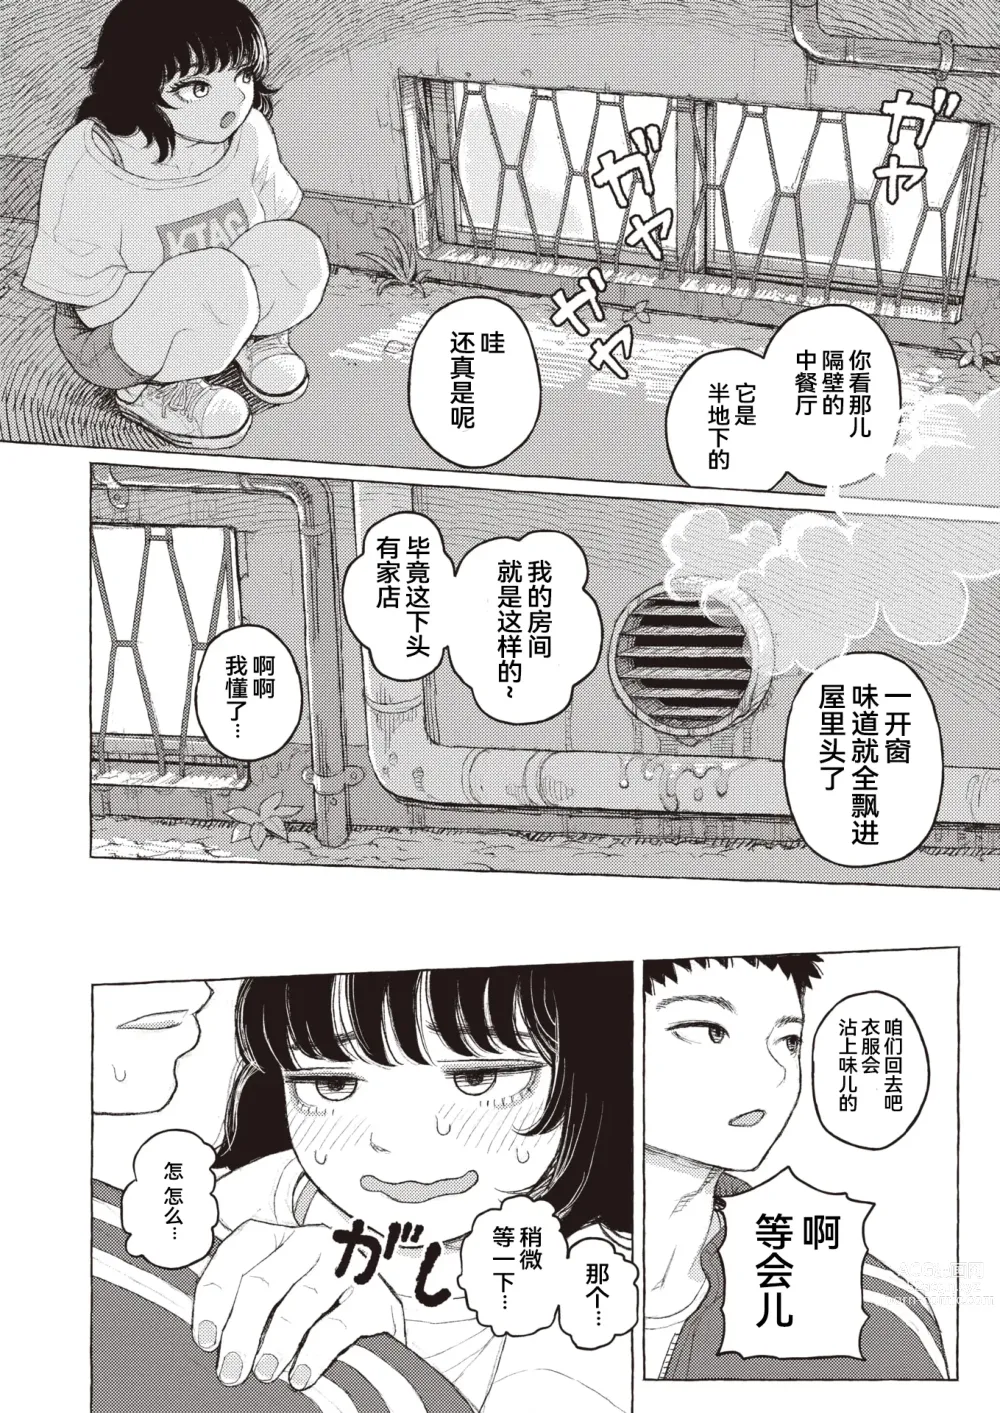 Page 6 of manga 纯情小路